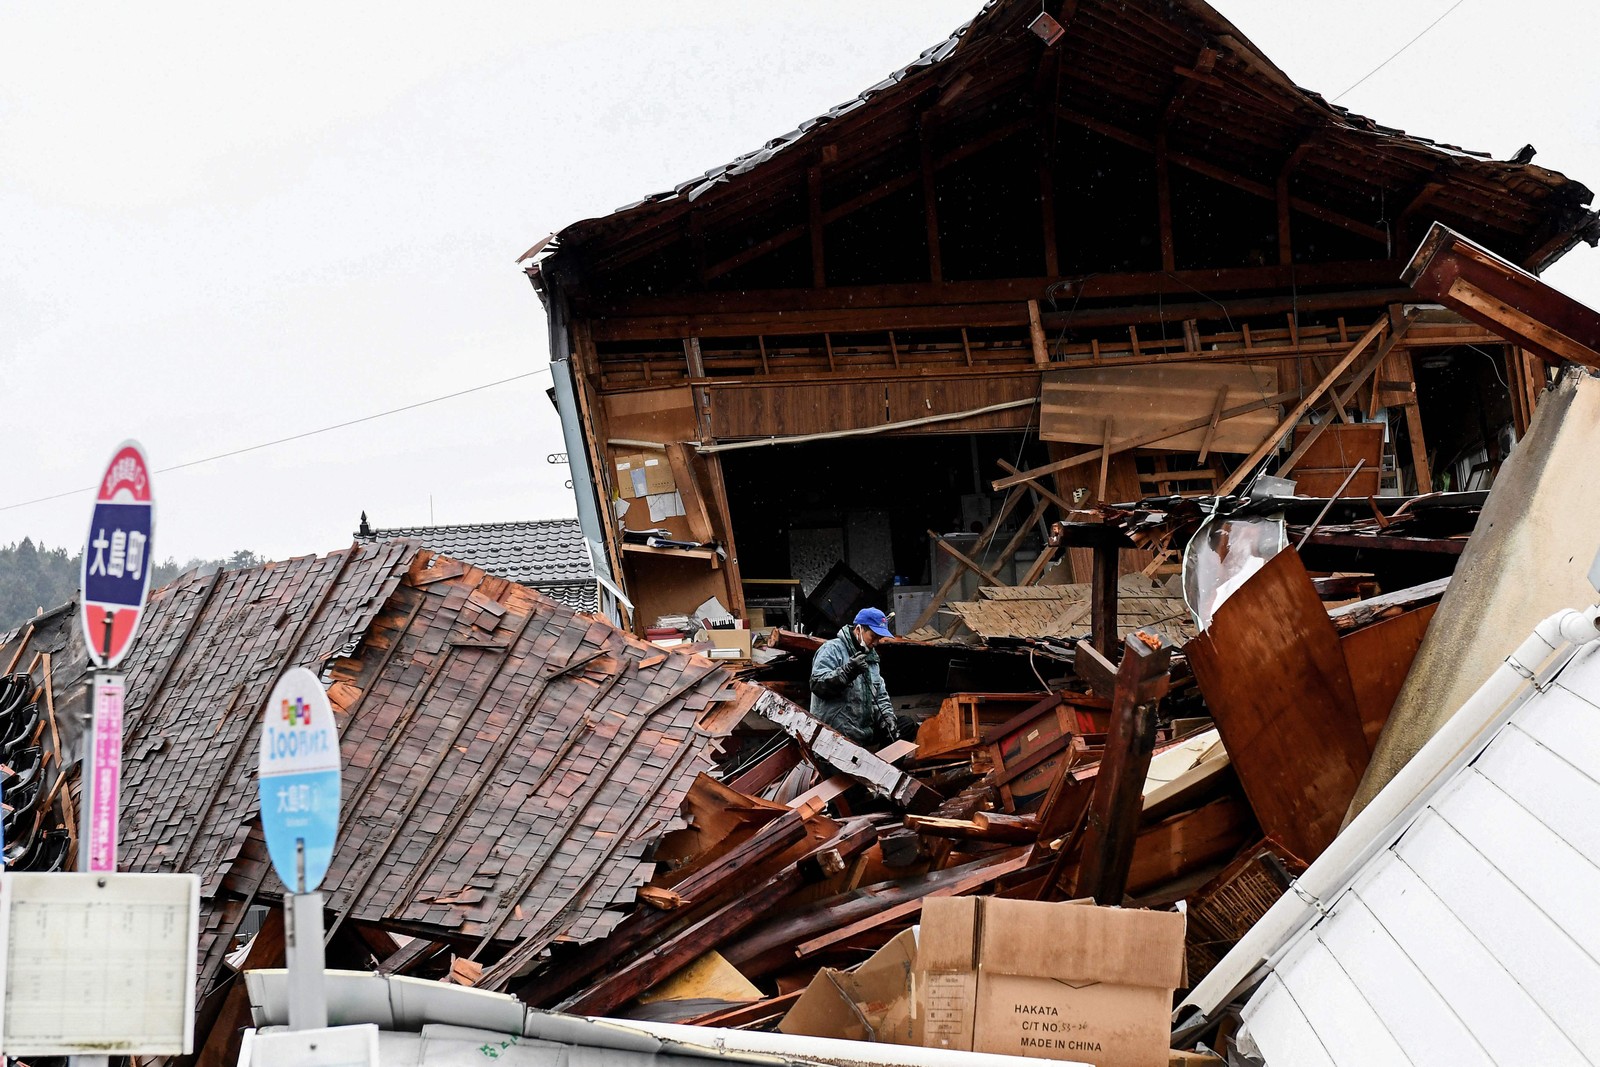 Casa destruída em Anamizu após terremoto de magnitude 7.5 atingir o Japão — Foto: Toshifumi KITAMURA / AFP